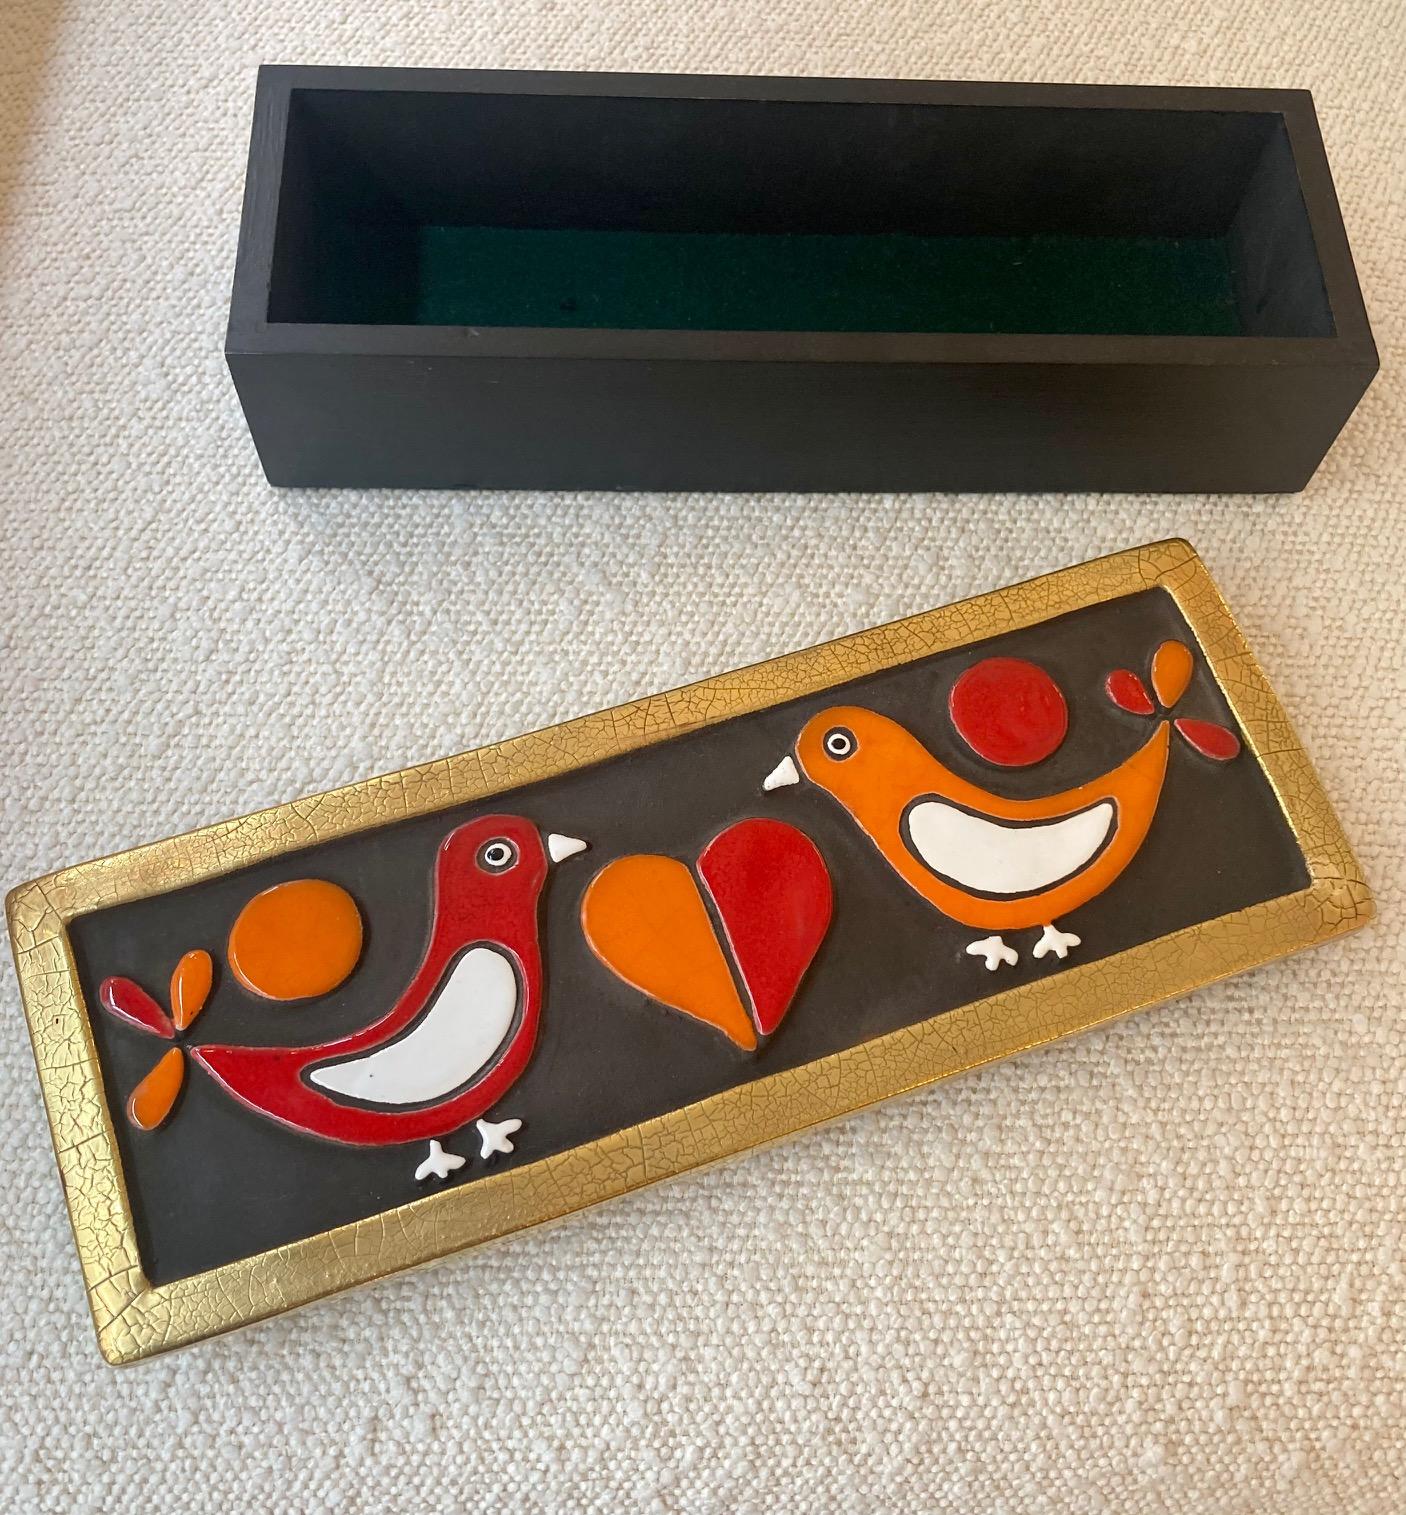 Une boîte en céramique émaillée représentant deux colombes se faisant face et un cœur au milieu.
Faïence gaufrée émaillée en rouge, orange et blanc sur fond noir. 
Bords dorés craquelés. 
la base de la boîte est en bois
Modèle 